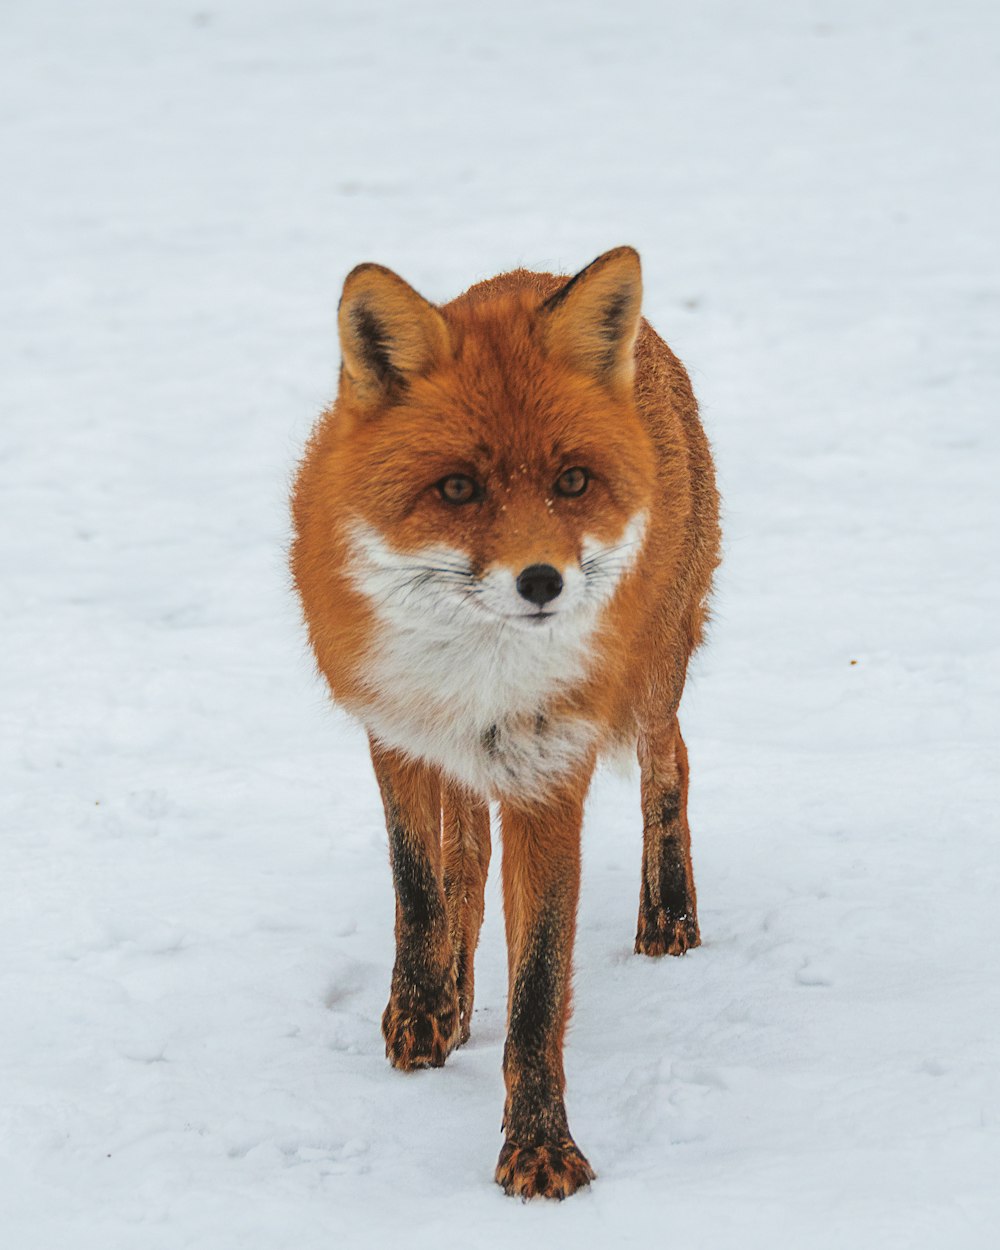 fox walking on snow field